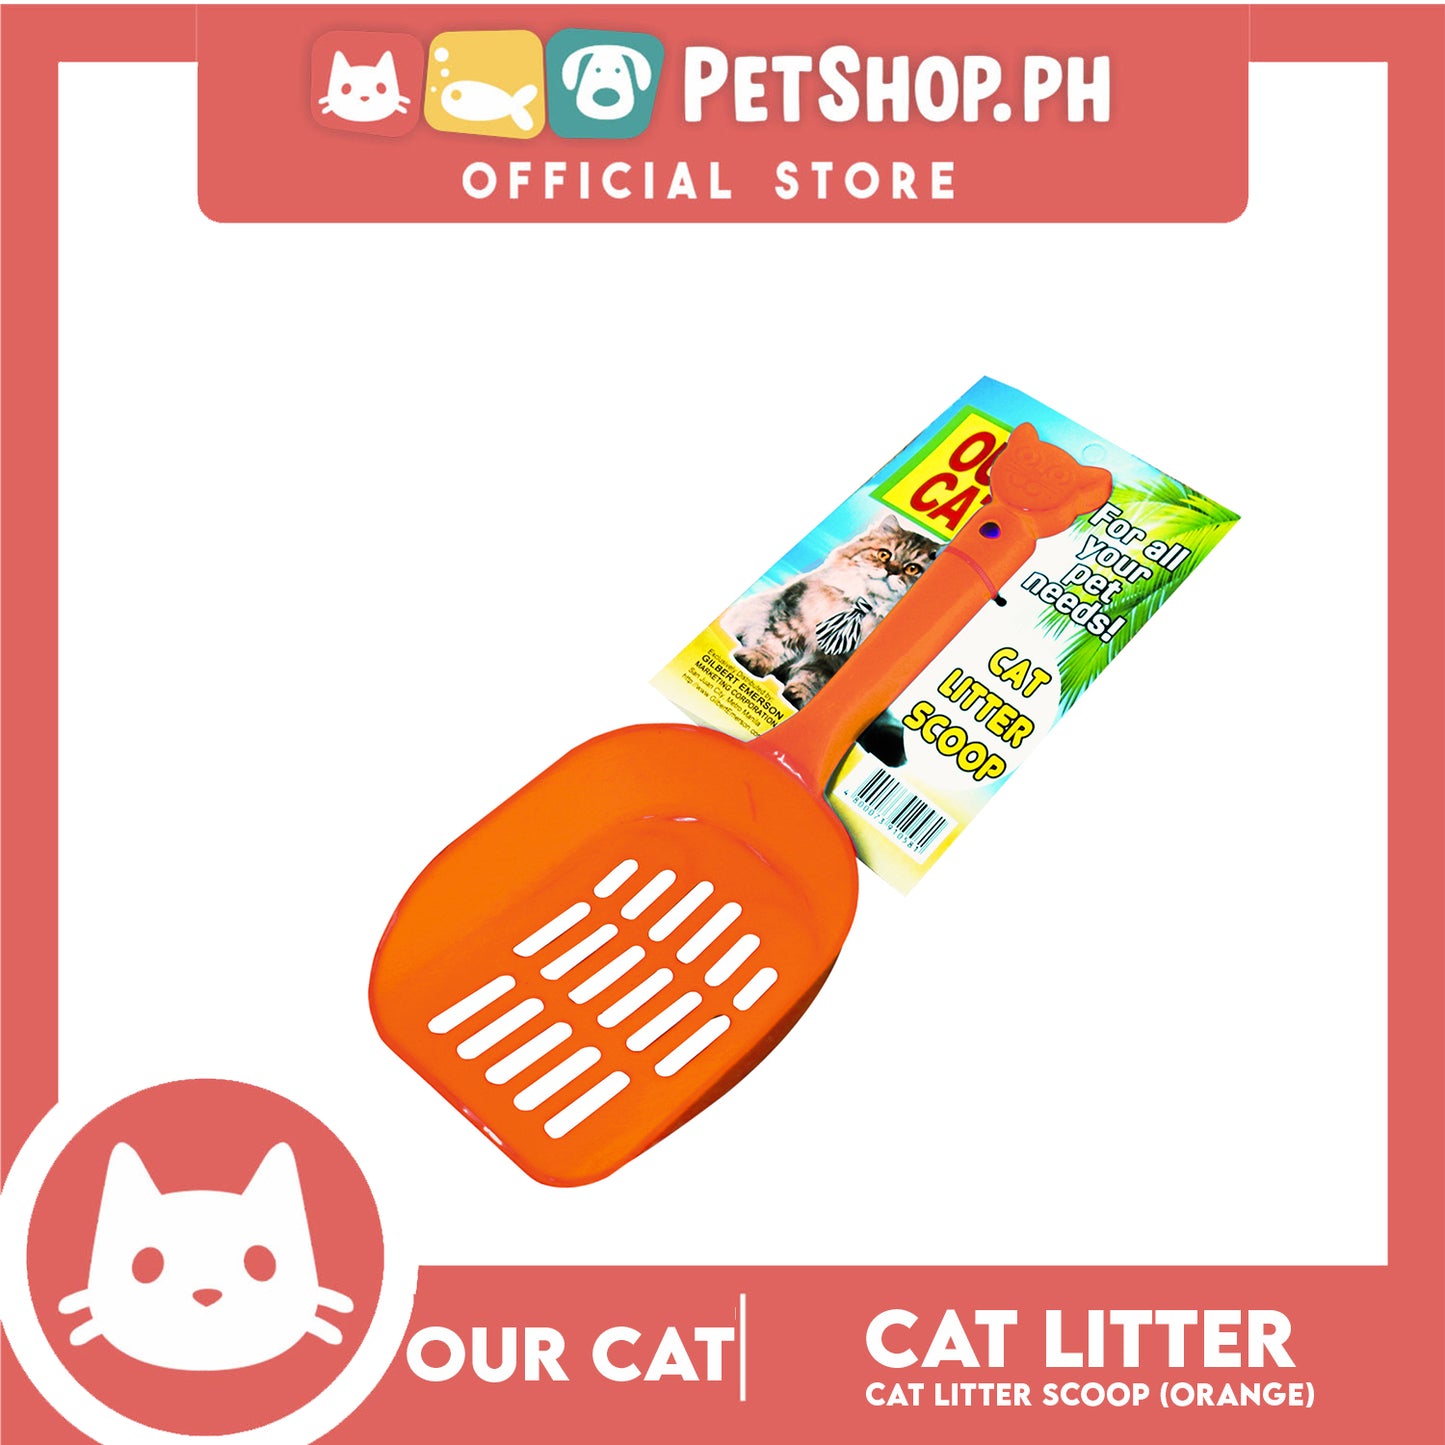 Our Cat Cat Litter Scoop (Orange)